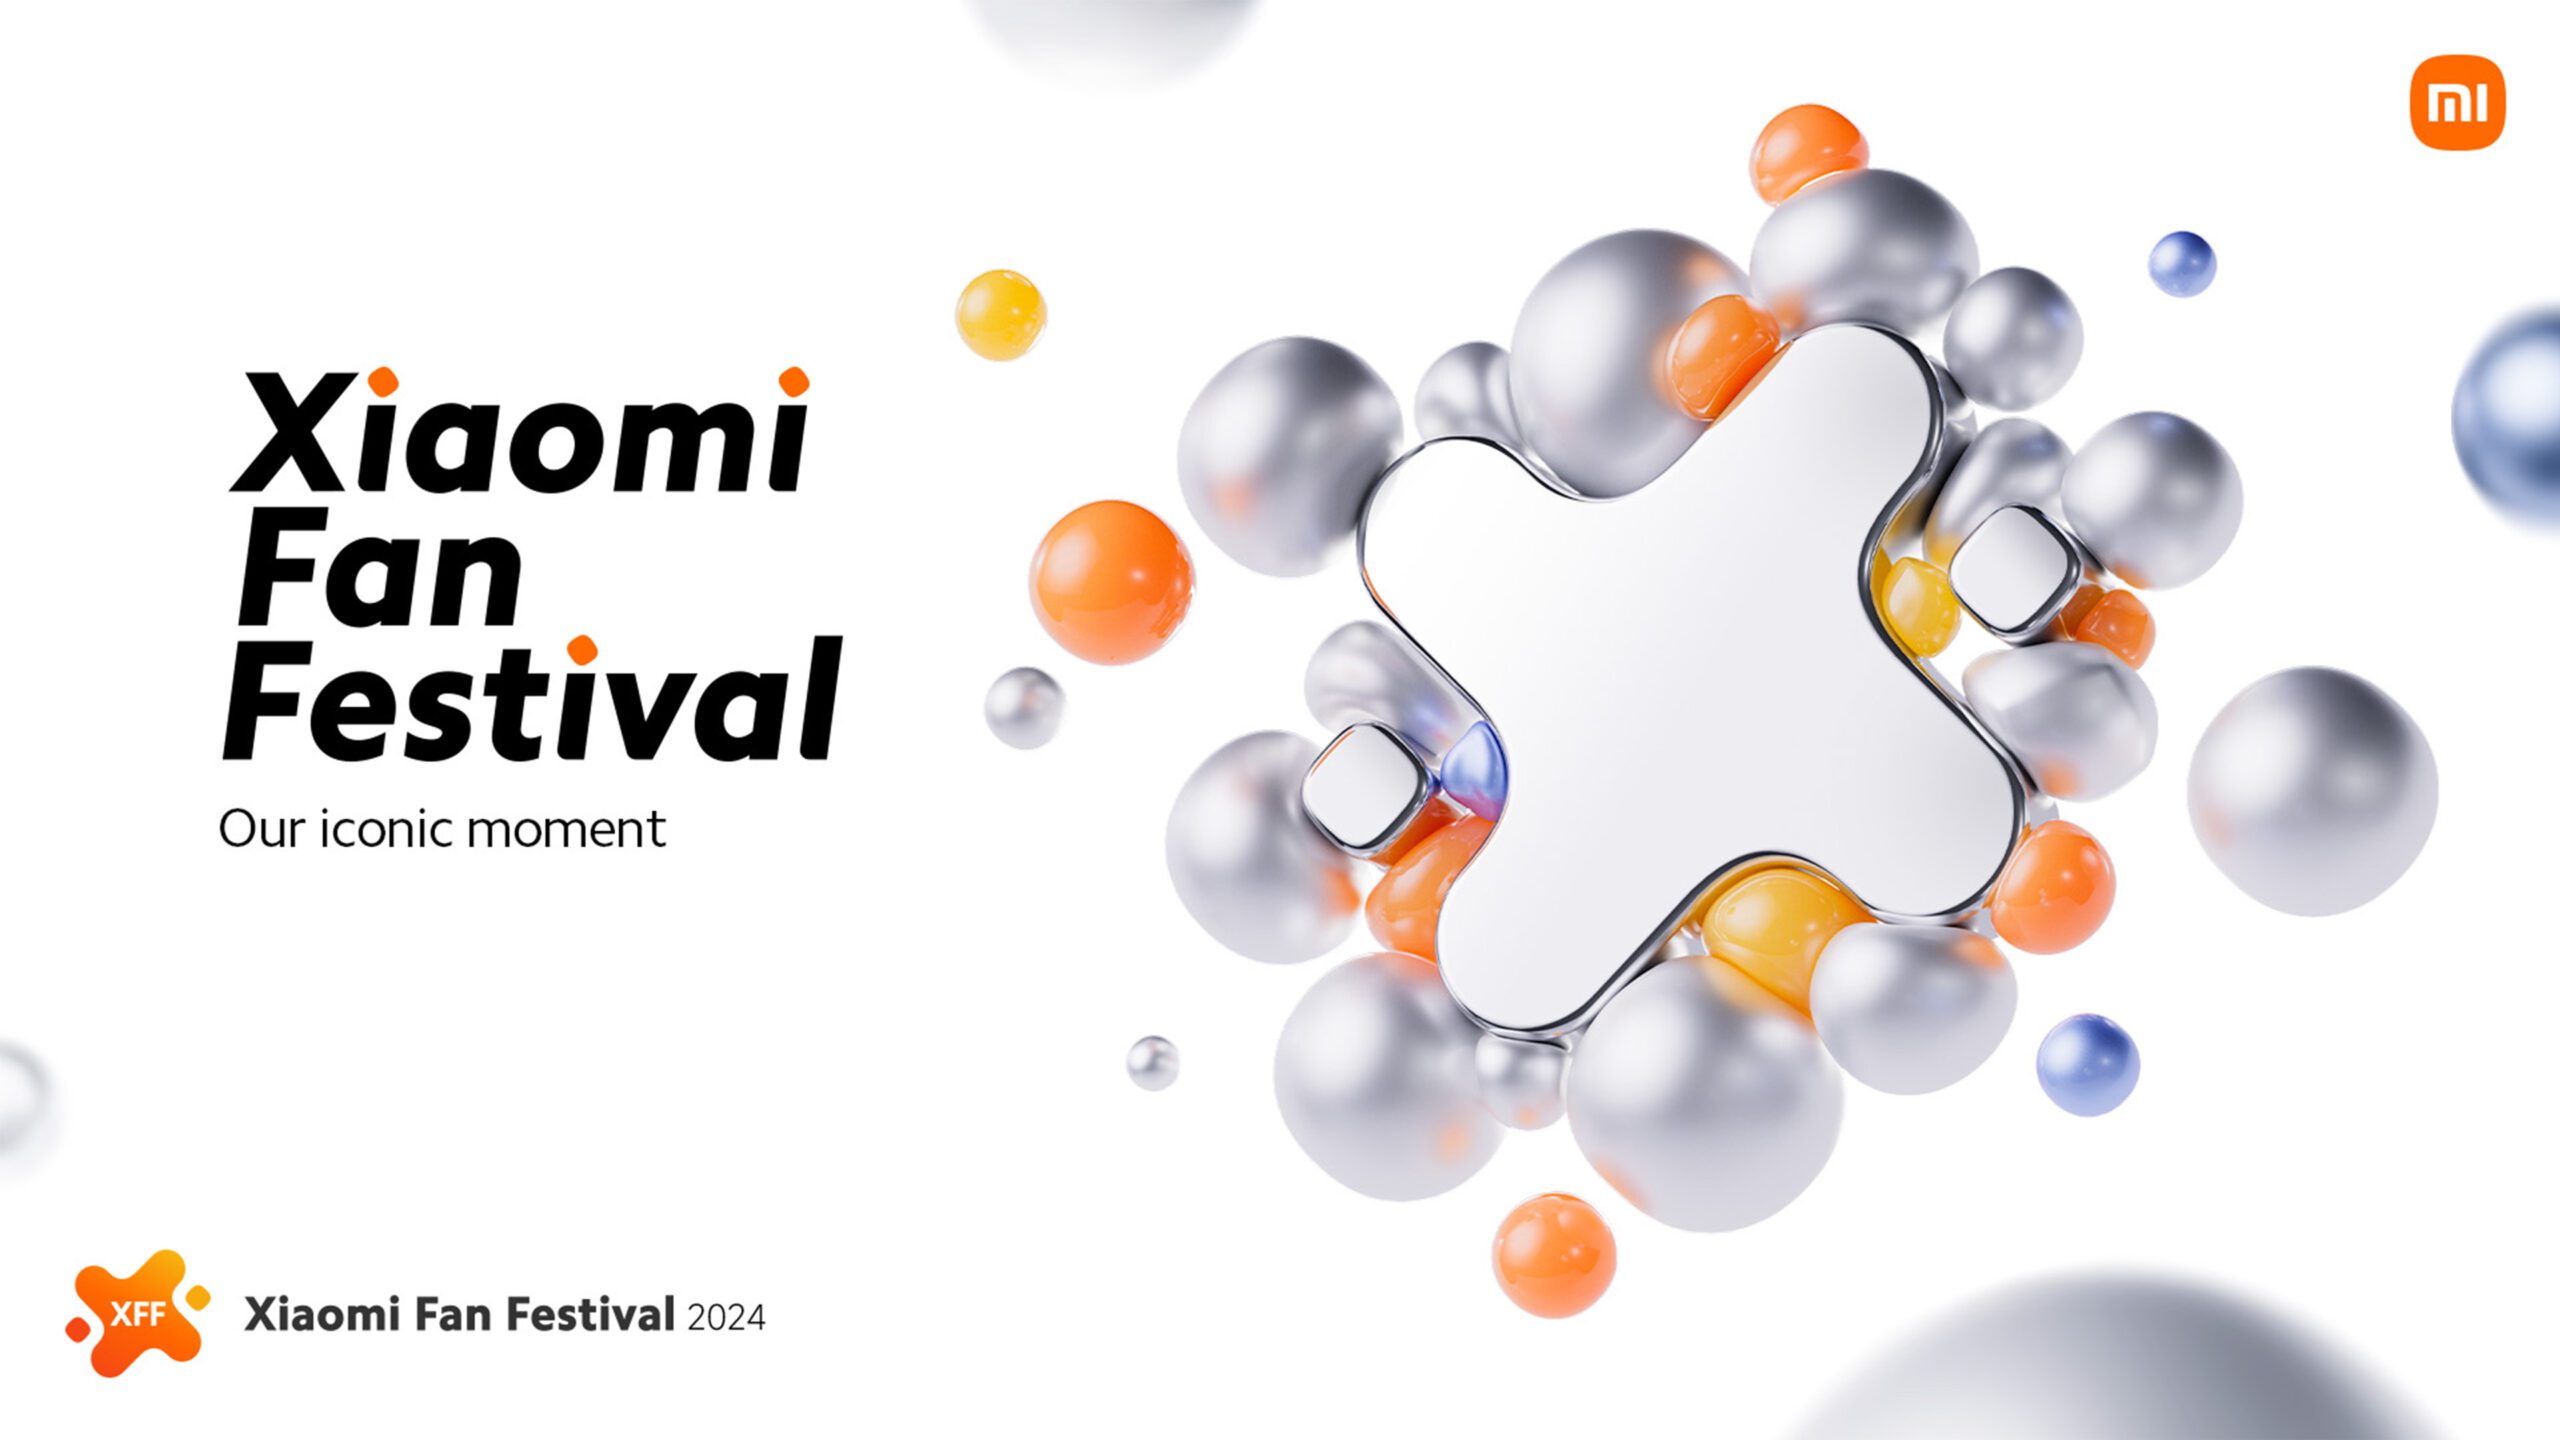 Xiaomi Celebrates its 14th Anniversary with the 2024 Annual Xiaomi Fan Festival